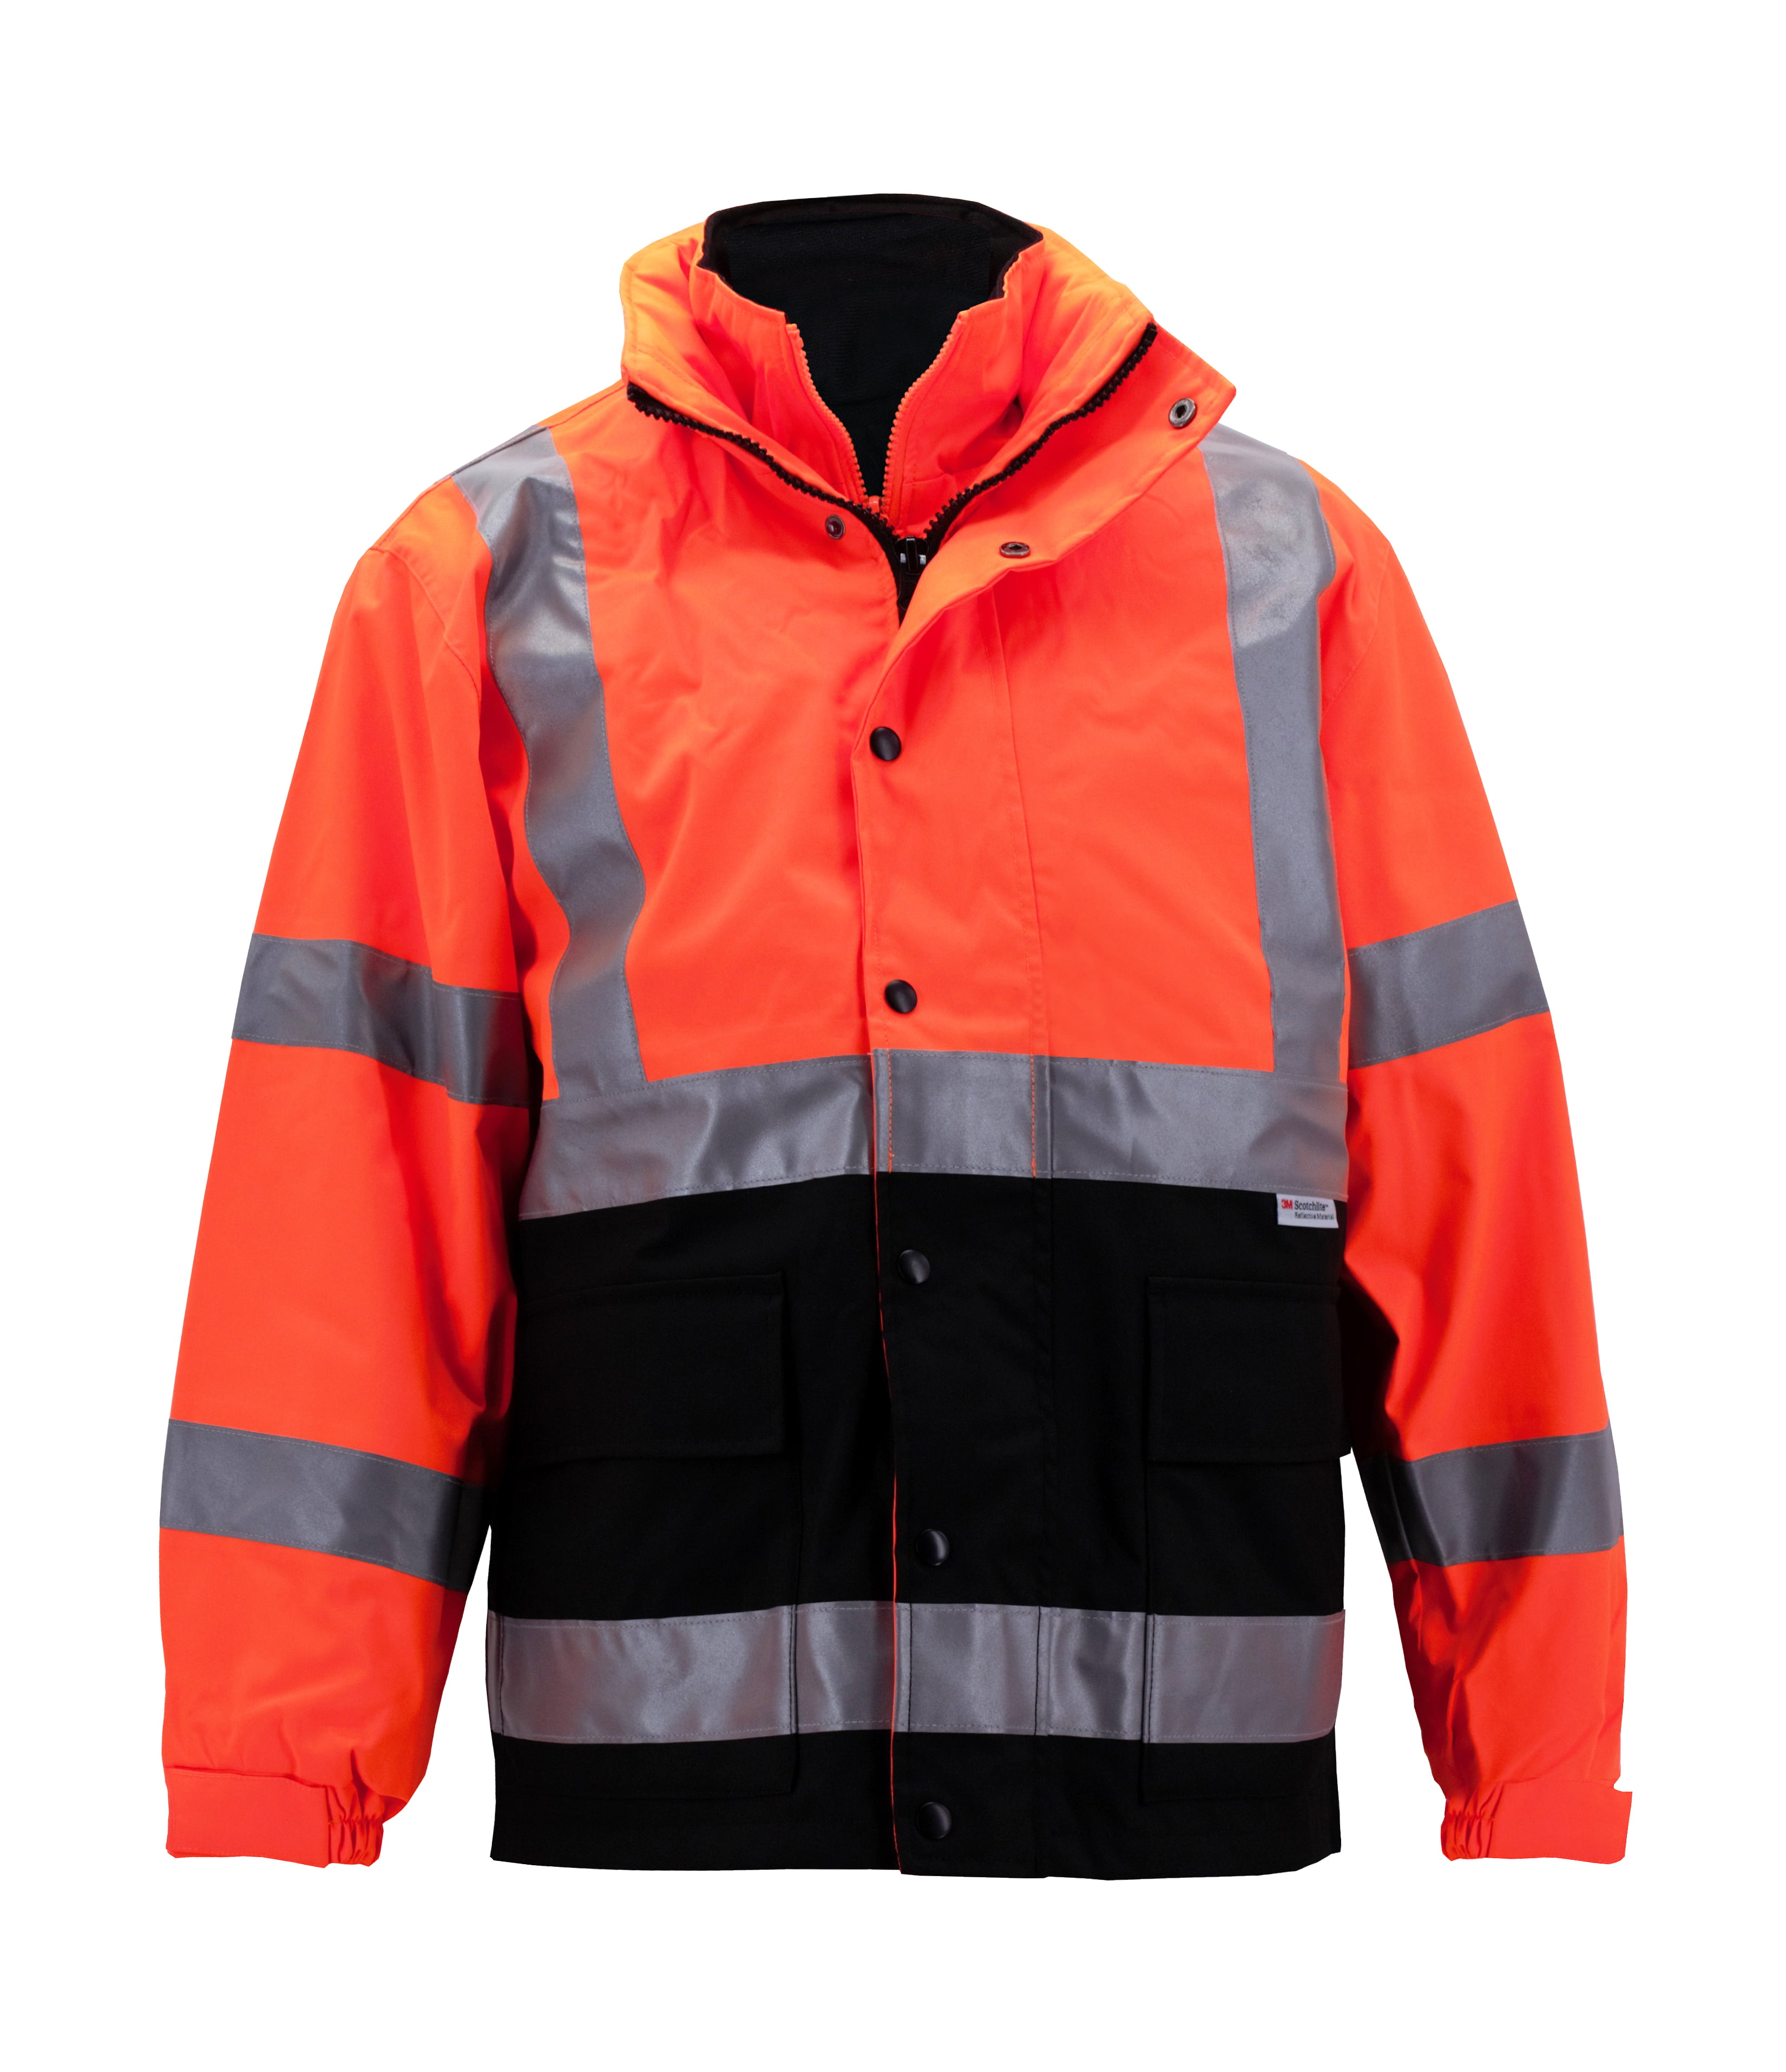 High Visibility Jacket XL Hi-Vis Orange